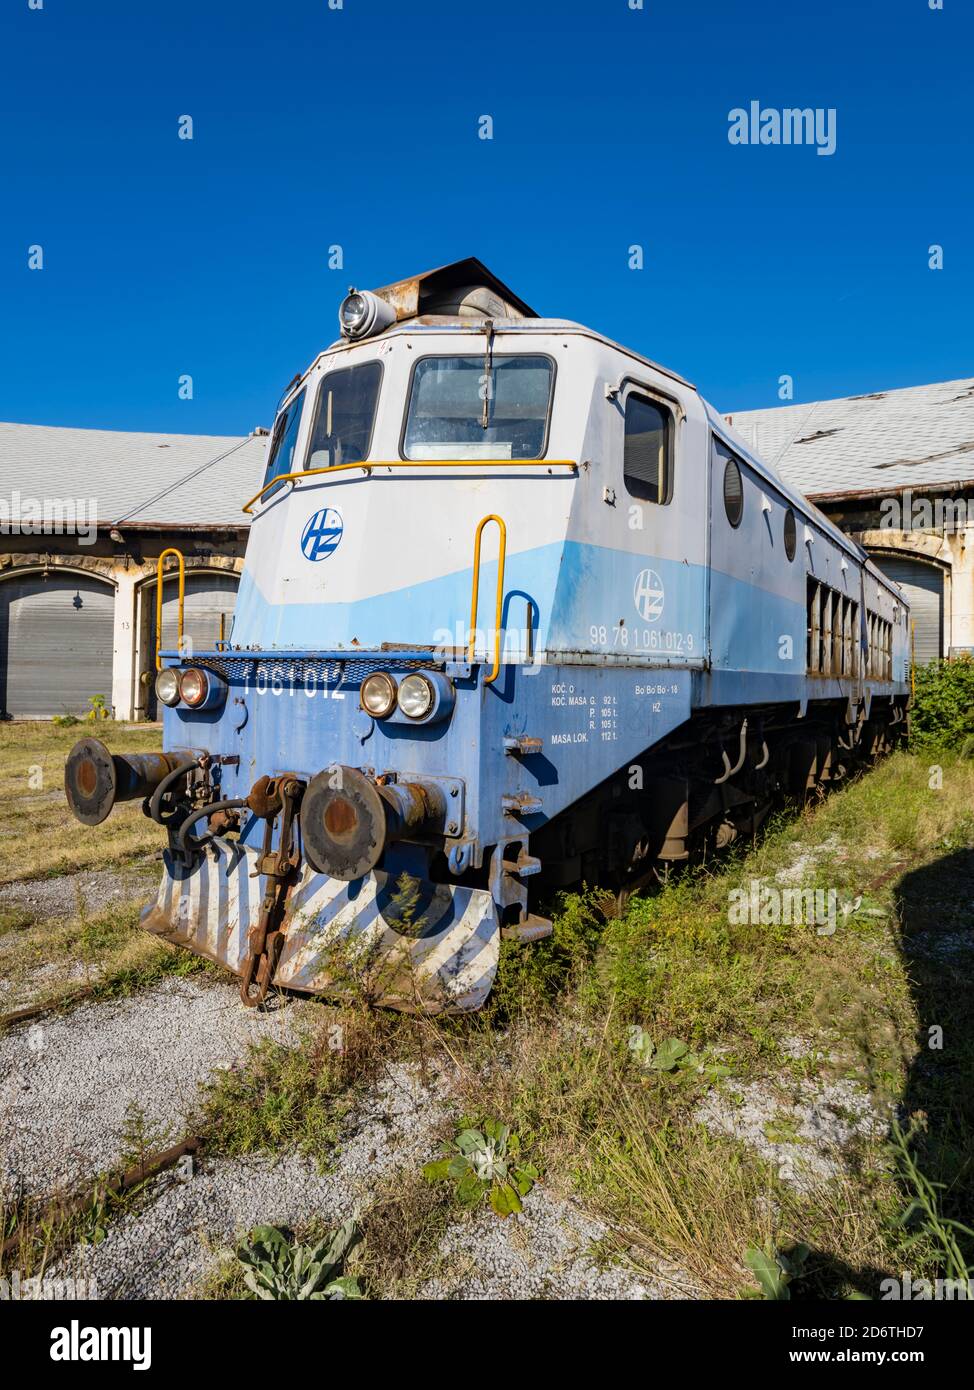 Locomotive HZ Hrvatske zeljeznice series 1061 012 (ex series 362) built by Ansaldo-Breda now standing derelict in Rijeka in Croatia Europe Stock Photo